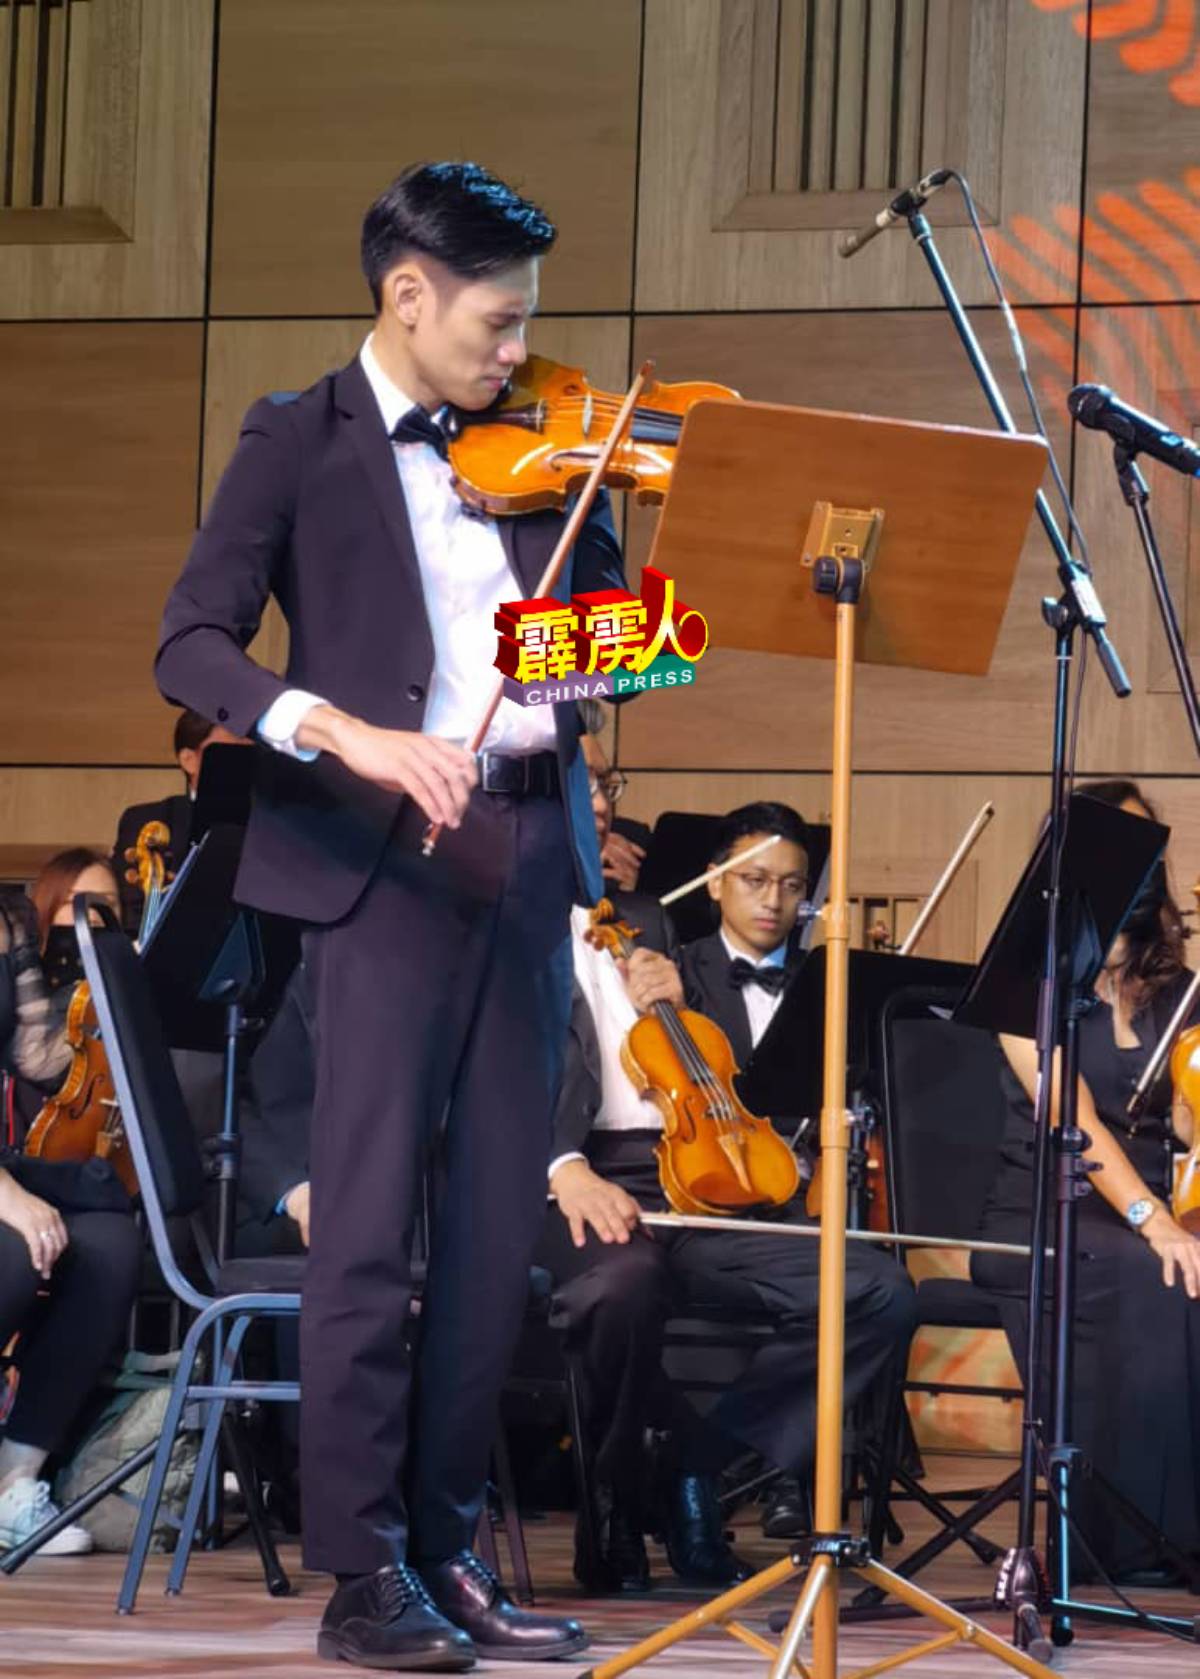 帅气乐手呈献小提琴独奏。